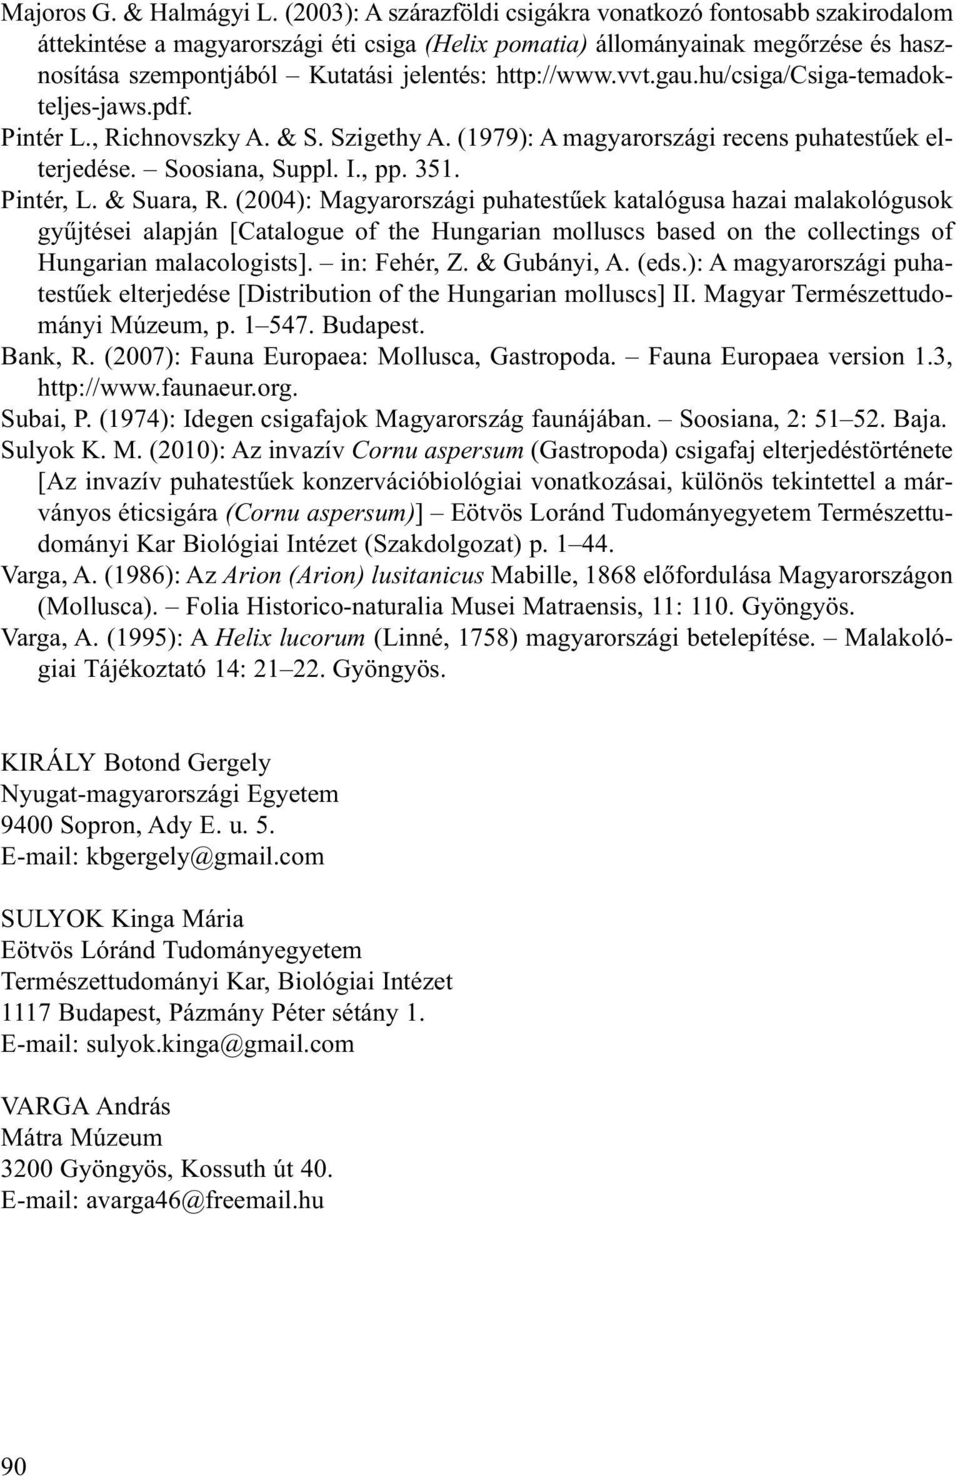 http://www.vvt.gau.hu/csiga/csiga-temadokteljes-jaws.pdf. Pintér L., Richnovszky A. & S. Szigethy A. (1979): A magyarországi recens puhatestûek elterjedése. Soosiana, Suppl. I., pp. 351. Pintér, L.